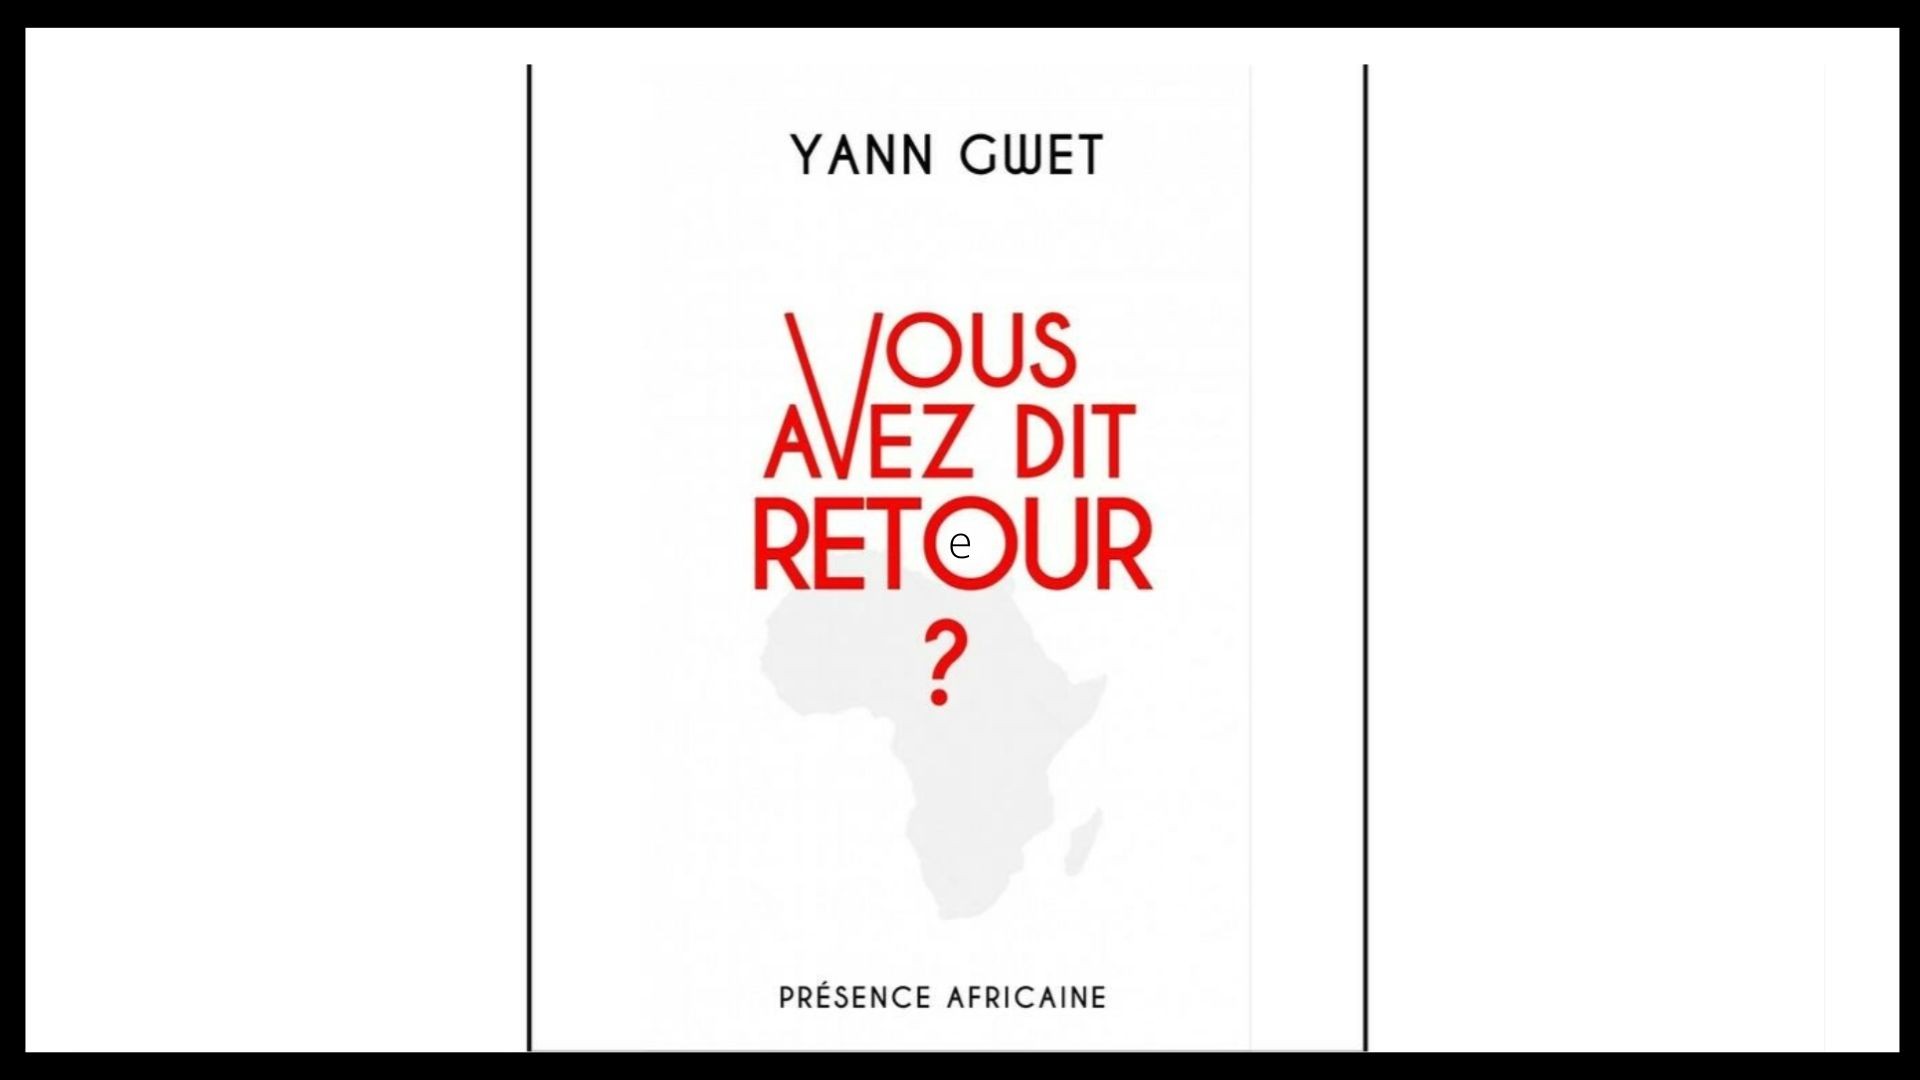 Vivre ailleurs, sur RFI : “Un livre sur le retour d'un expatrié africain sur le continent“